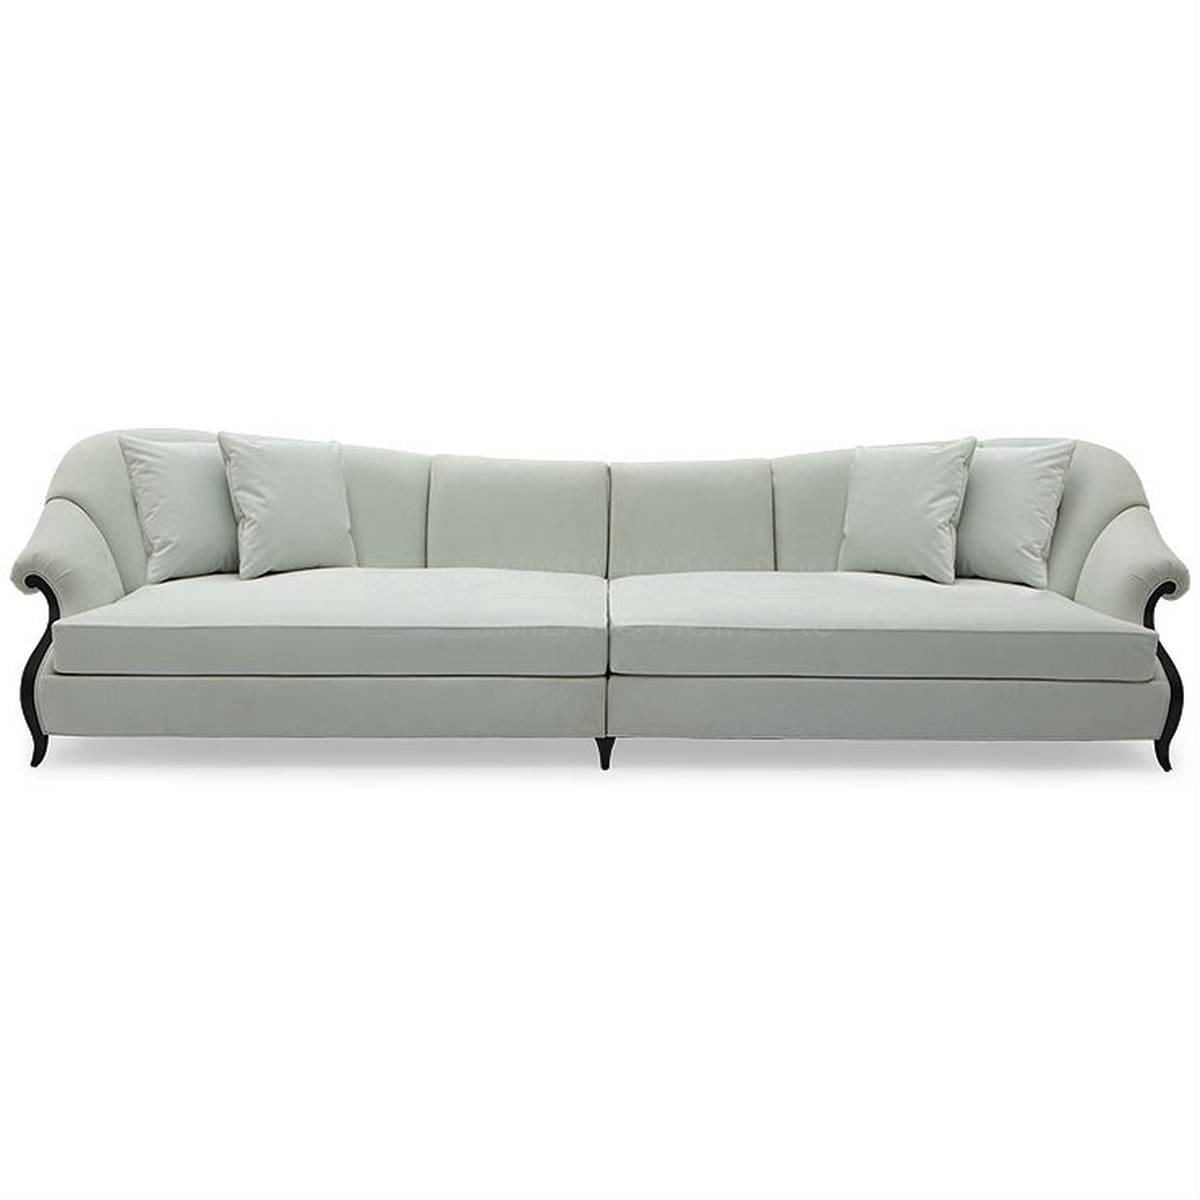 Прямой диван Virage sofa из США фабрики CHRISTOPHER GUY